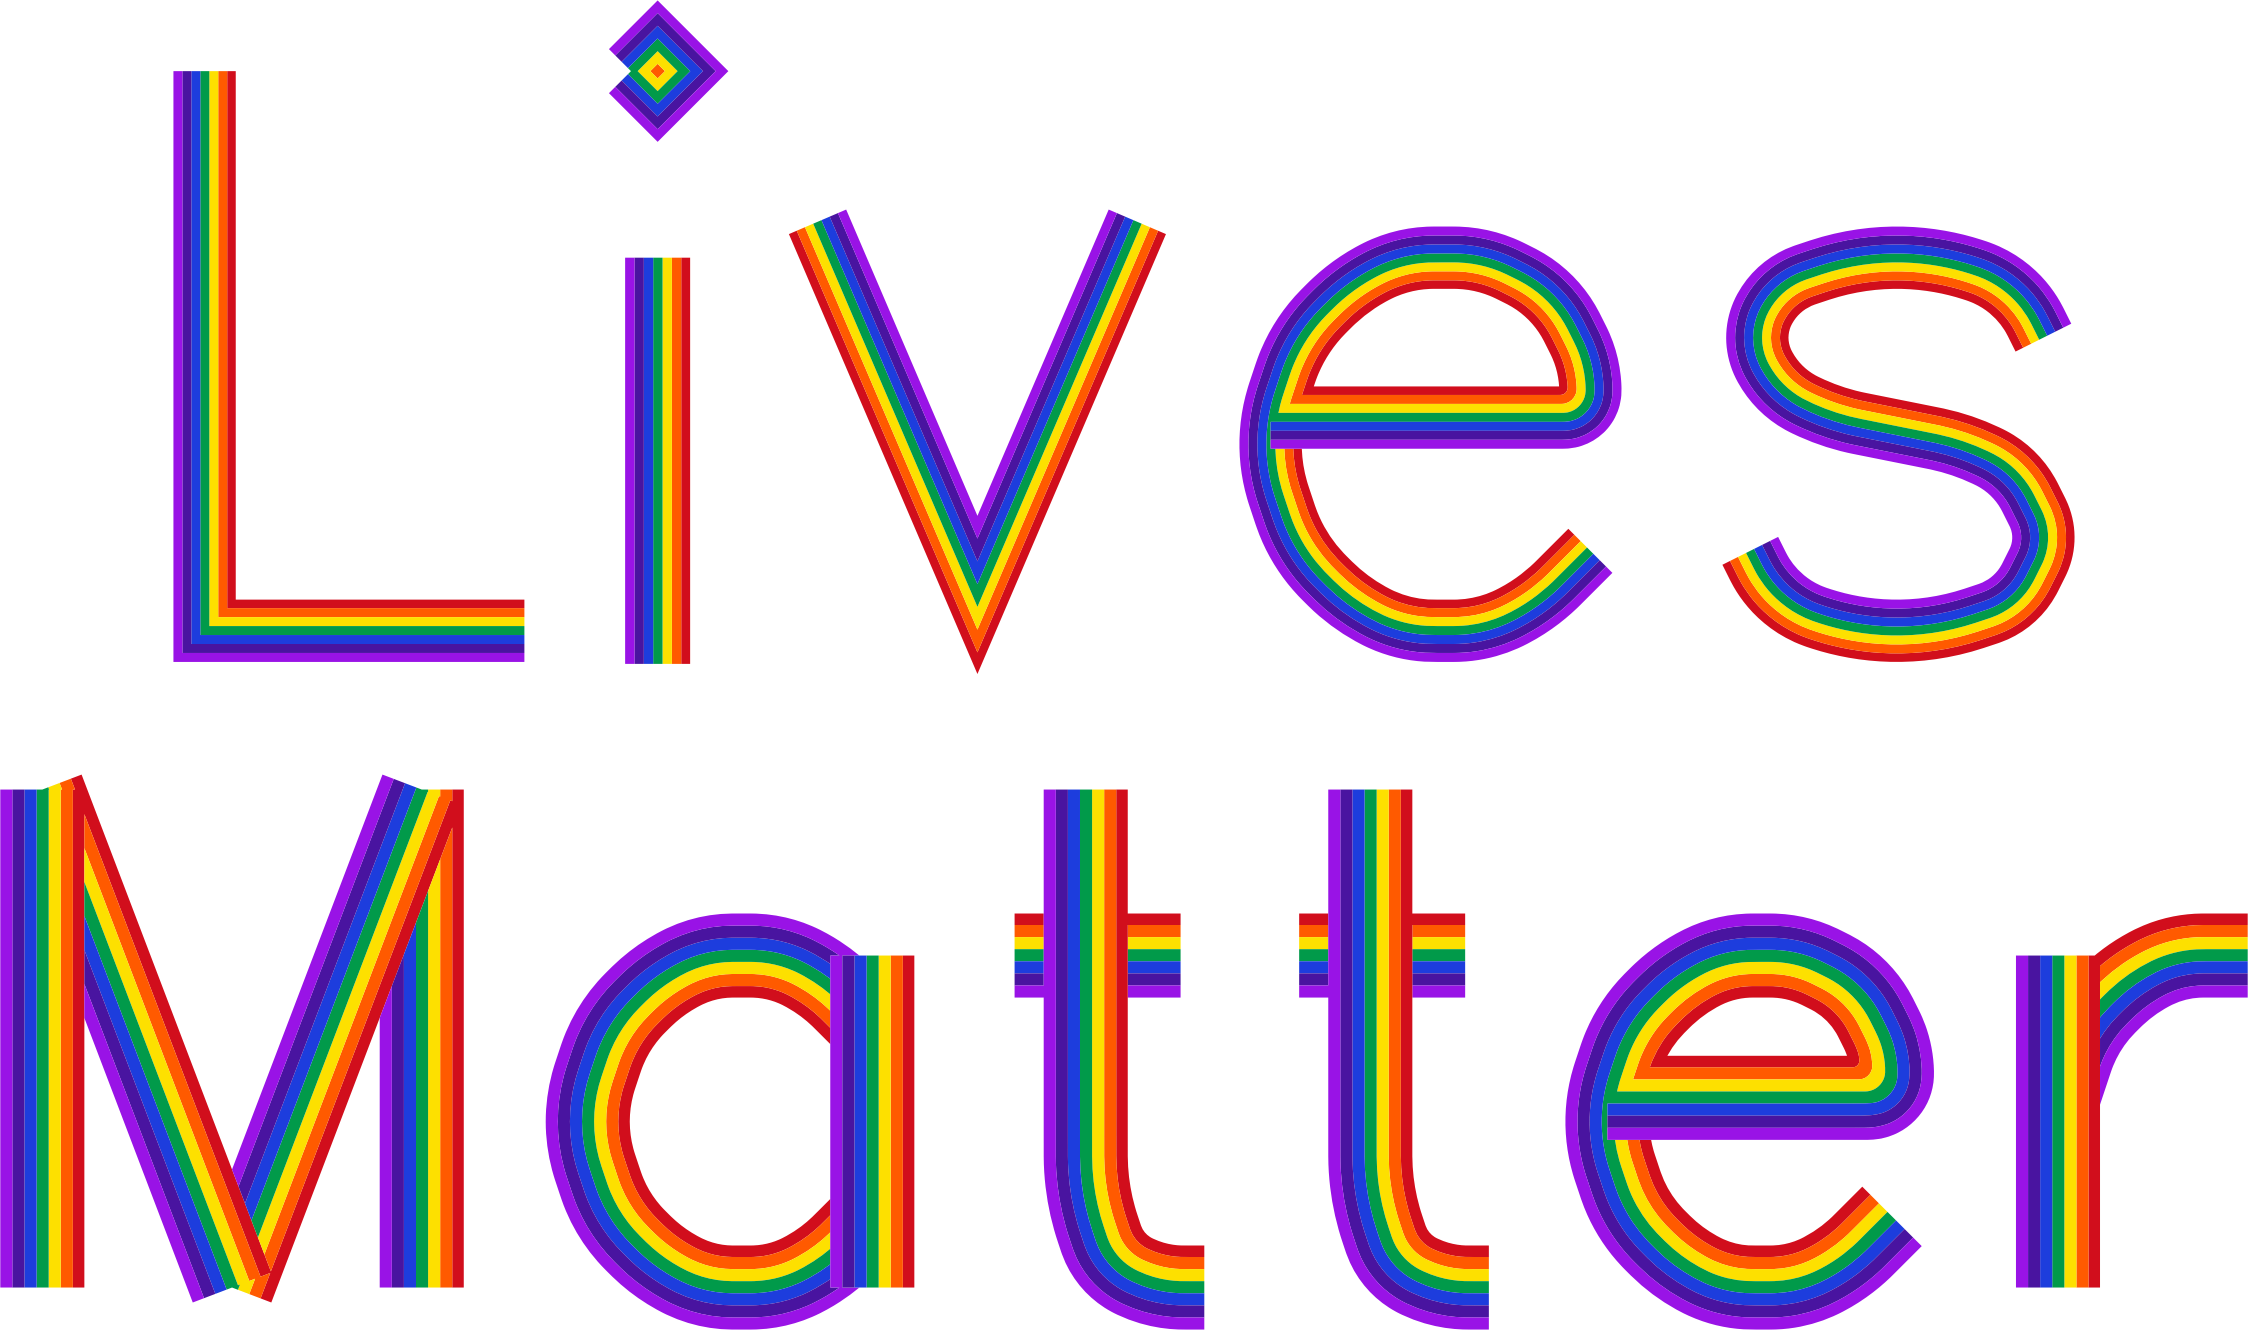 Lives Matter No Background - All Lives Matter Clipart (2248x1330)